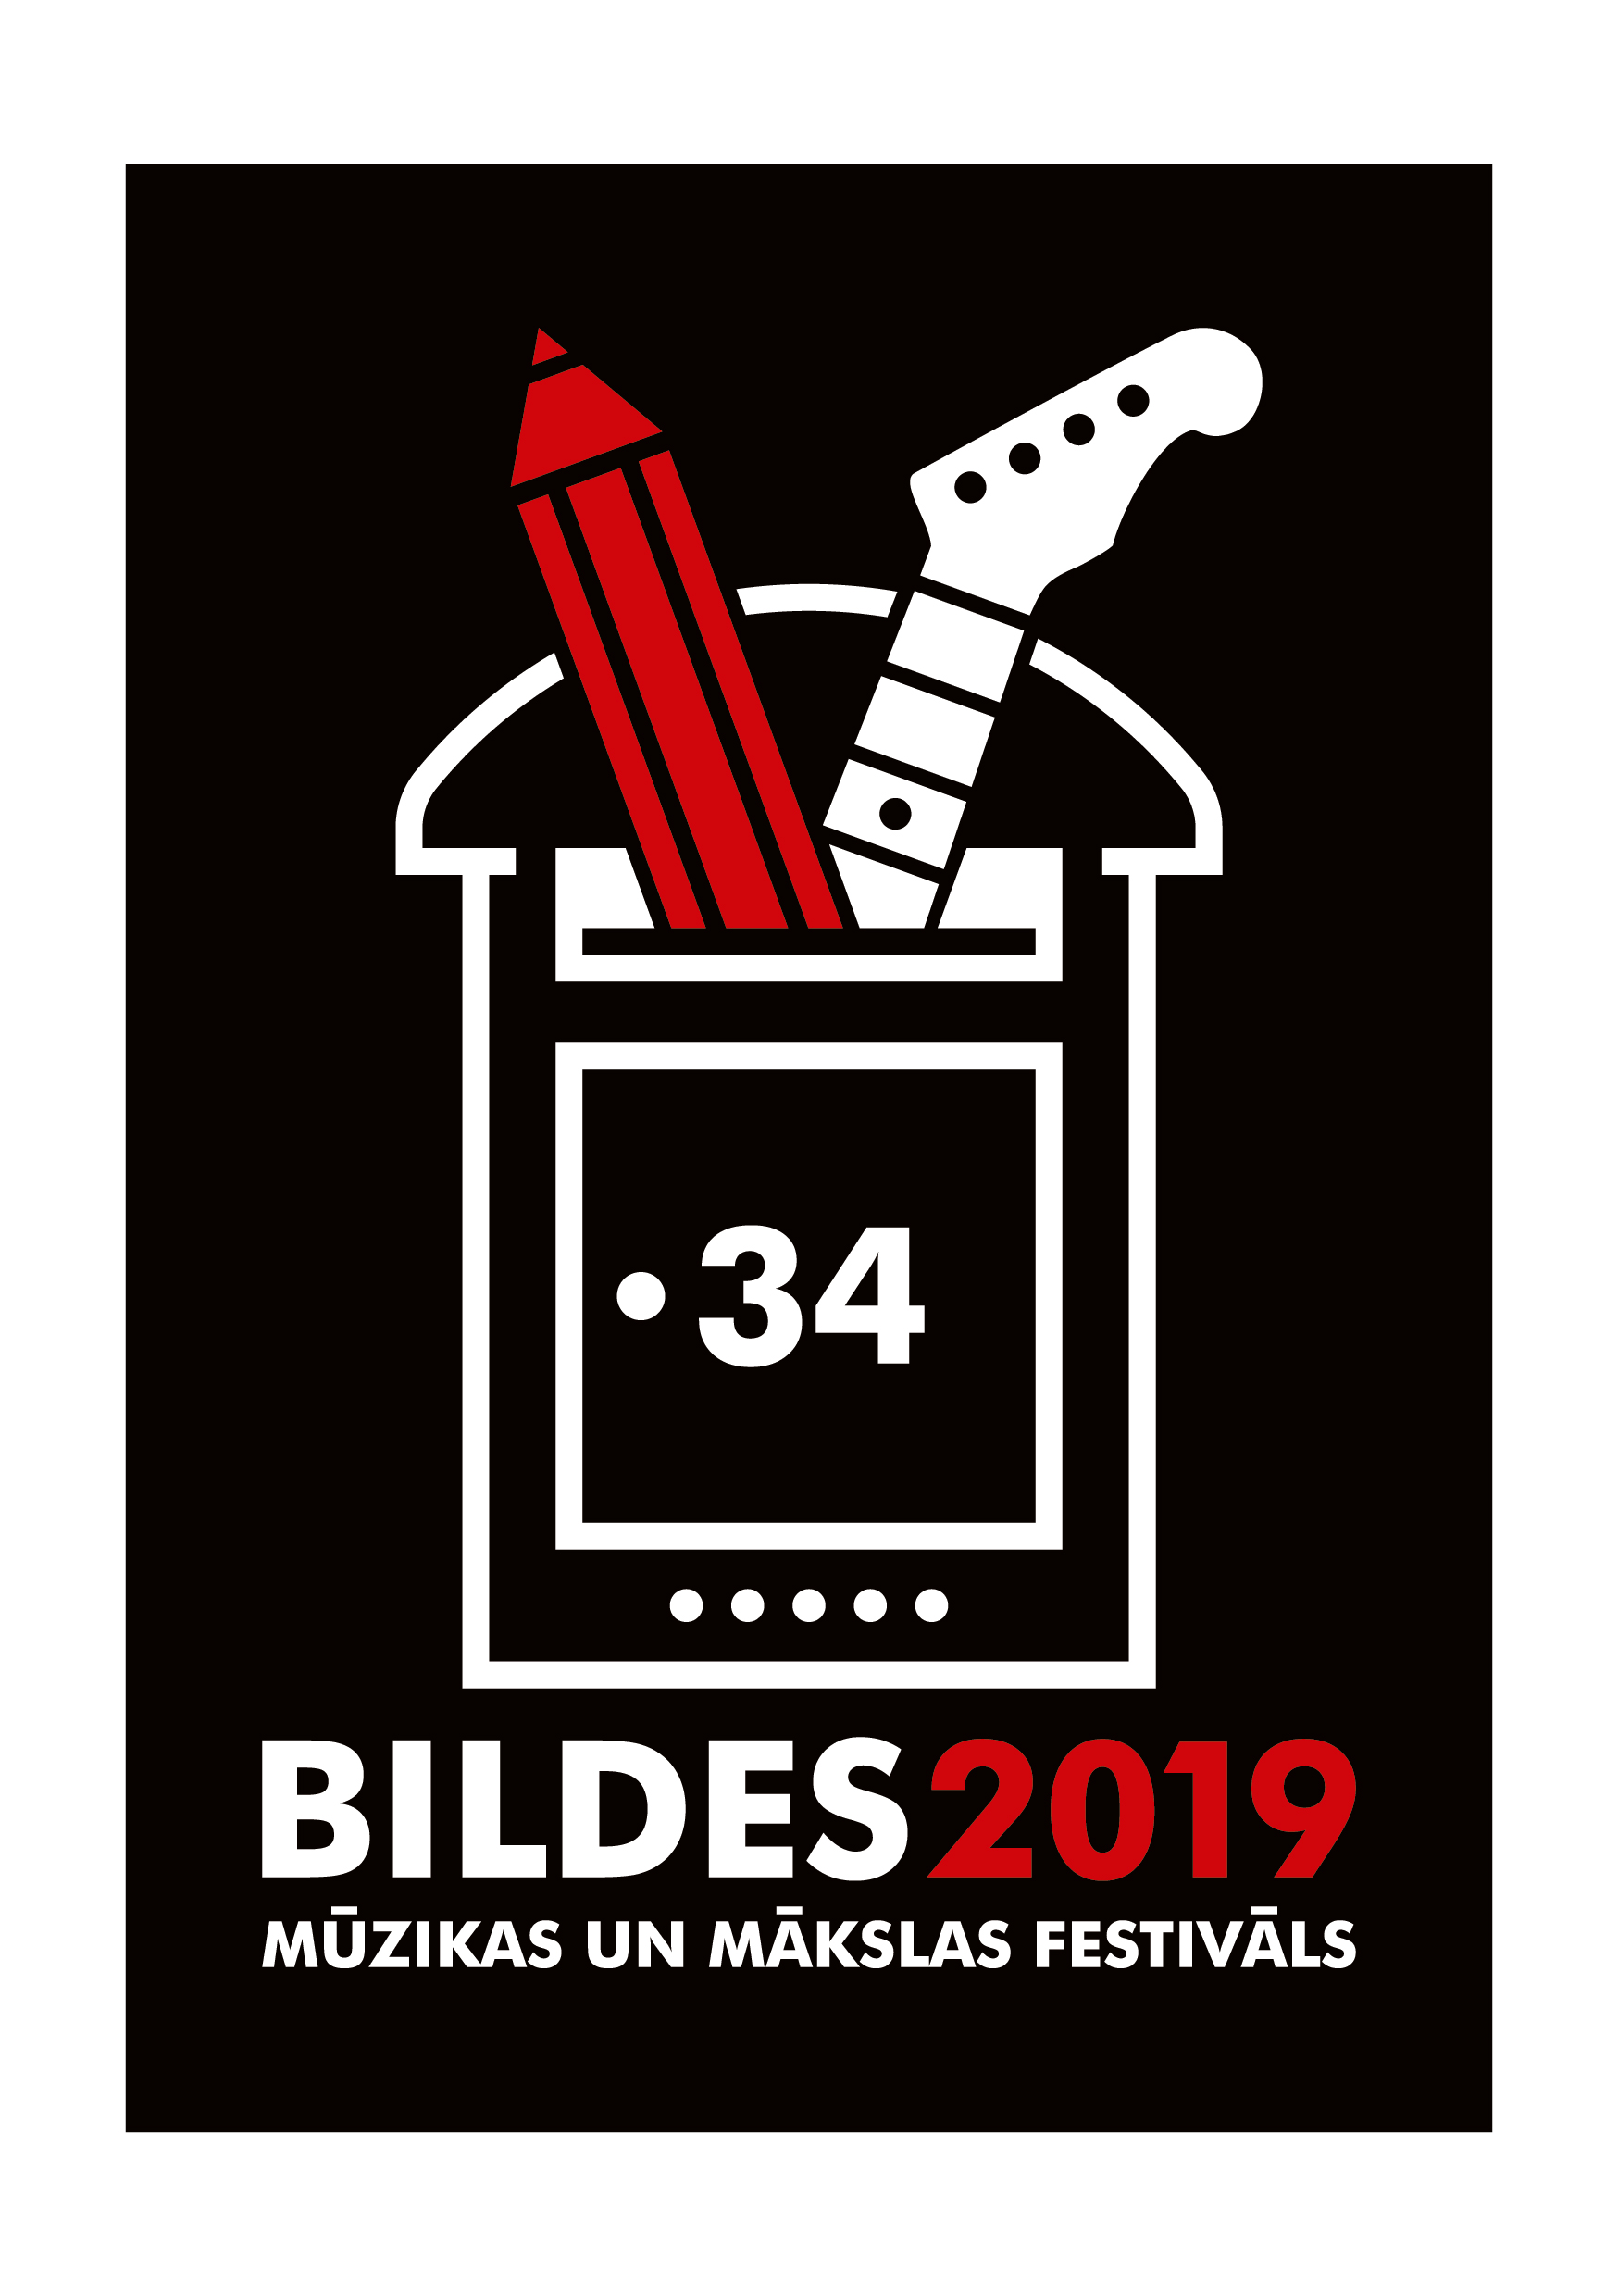 BILDES 2019 logo melns kr-01.jpg